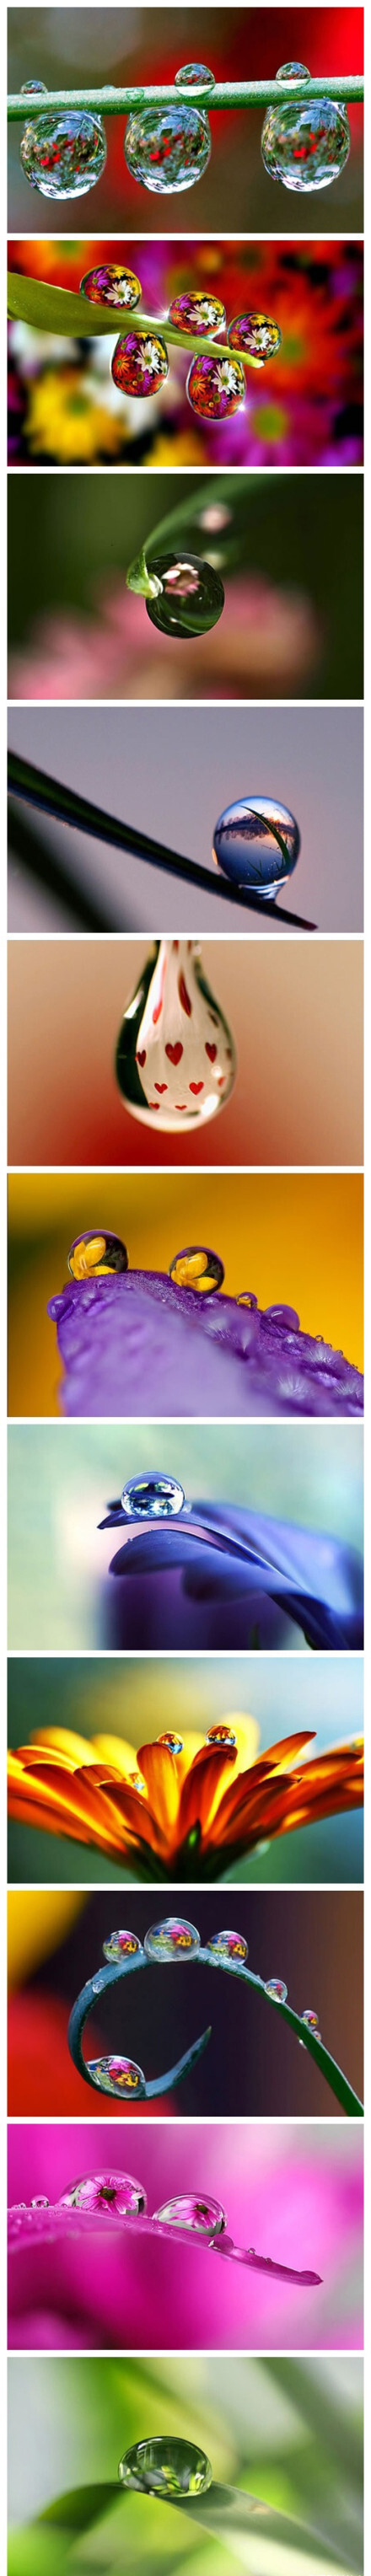 各种美丽水滴照片图片